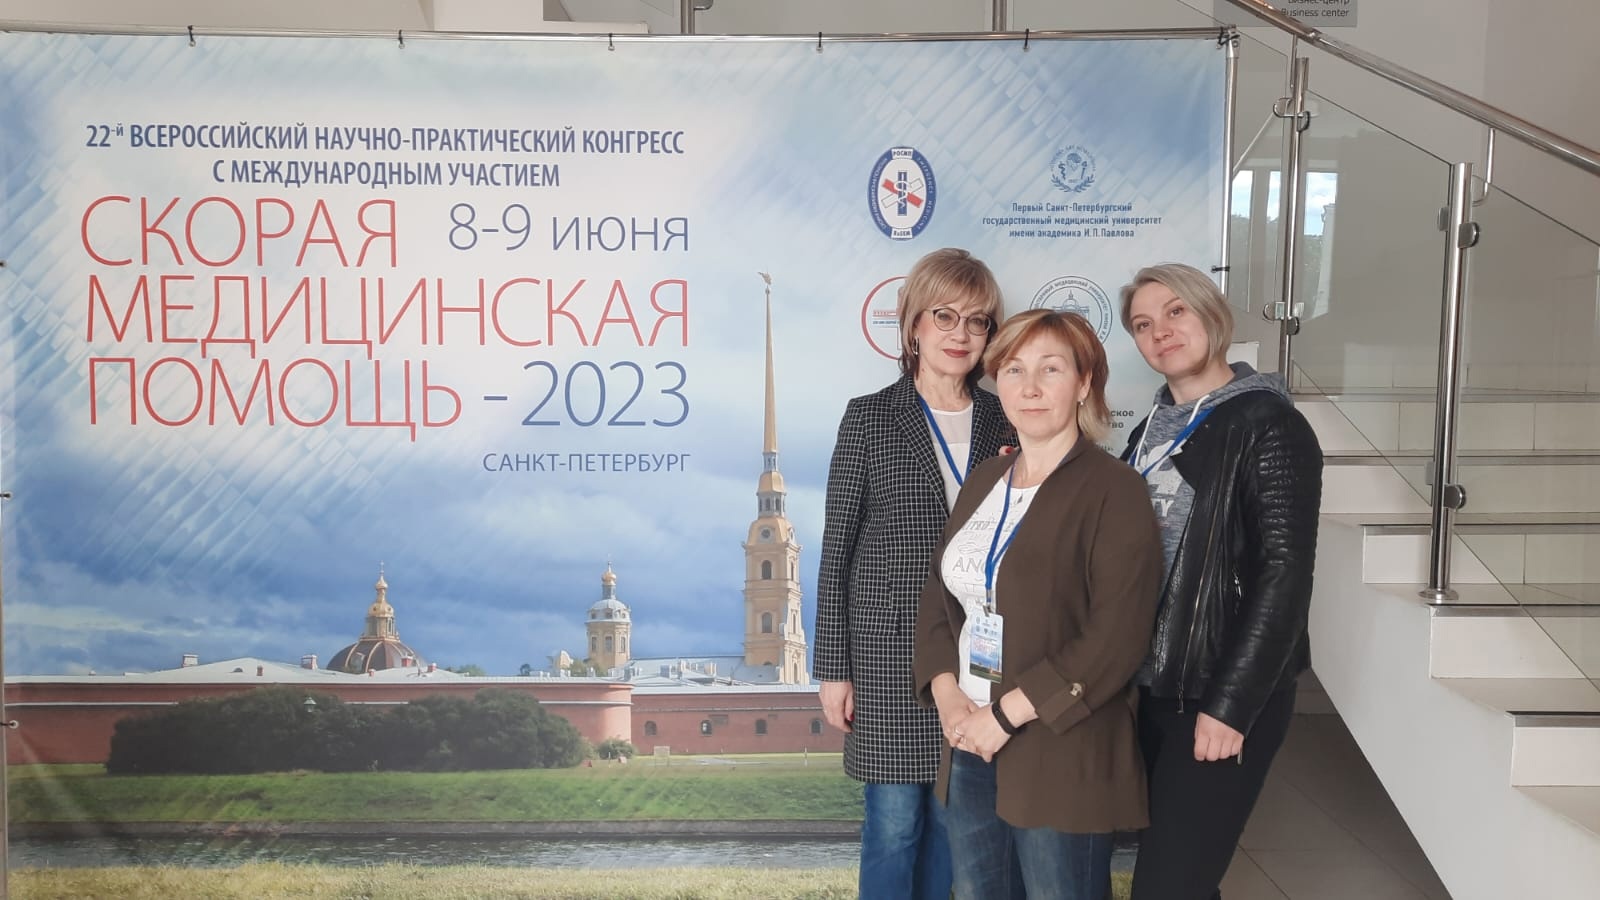 Скорая медсанчасти – на Всероссийском конгрессе